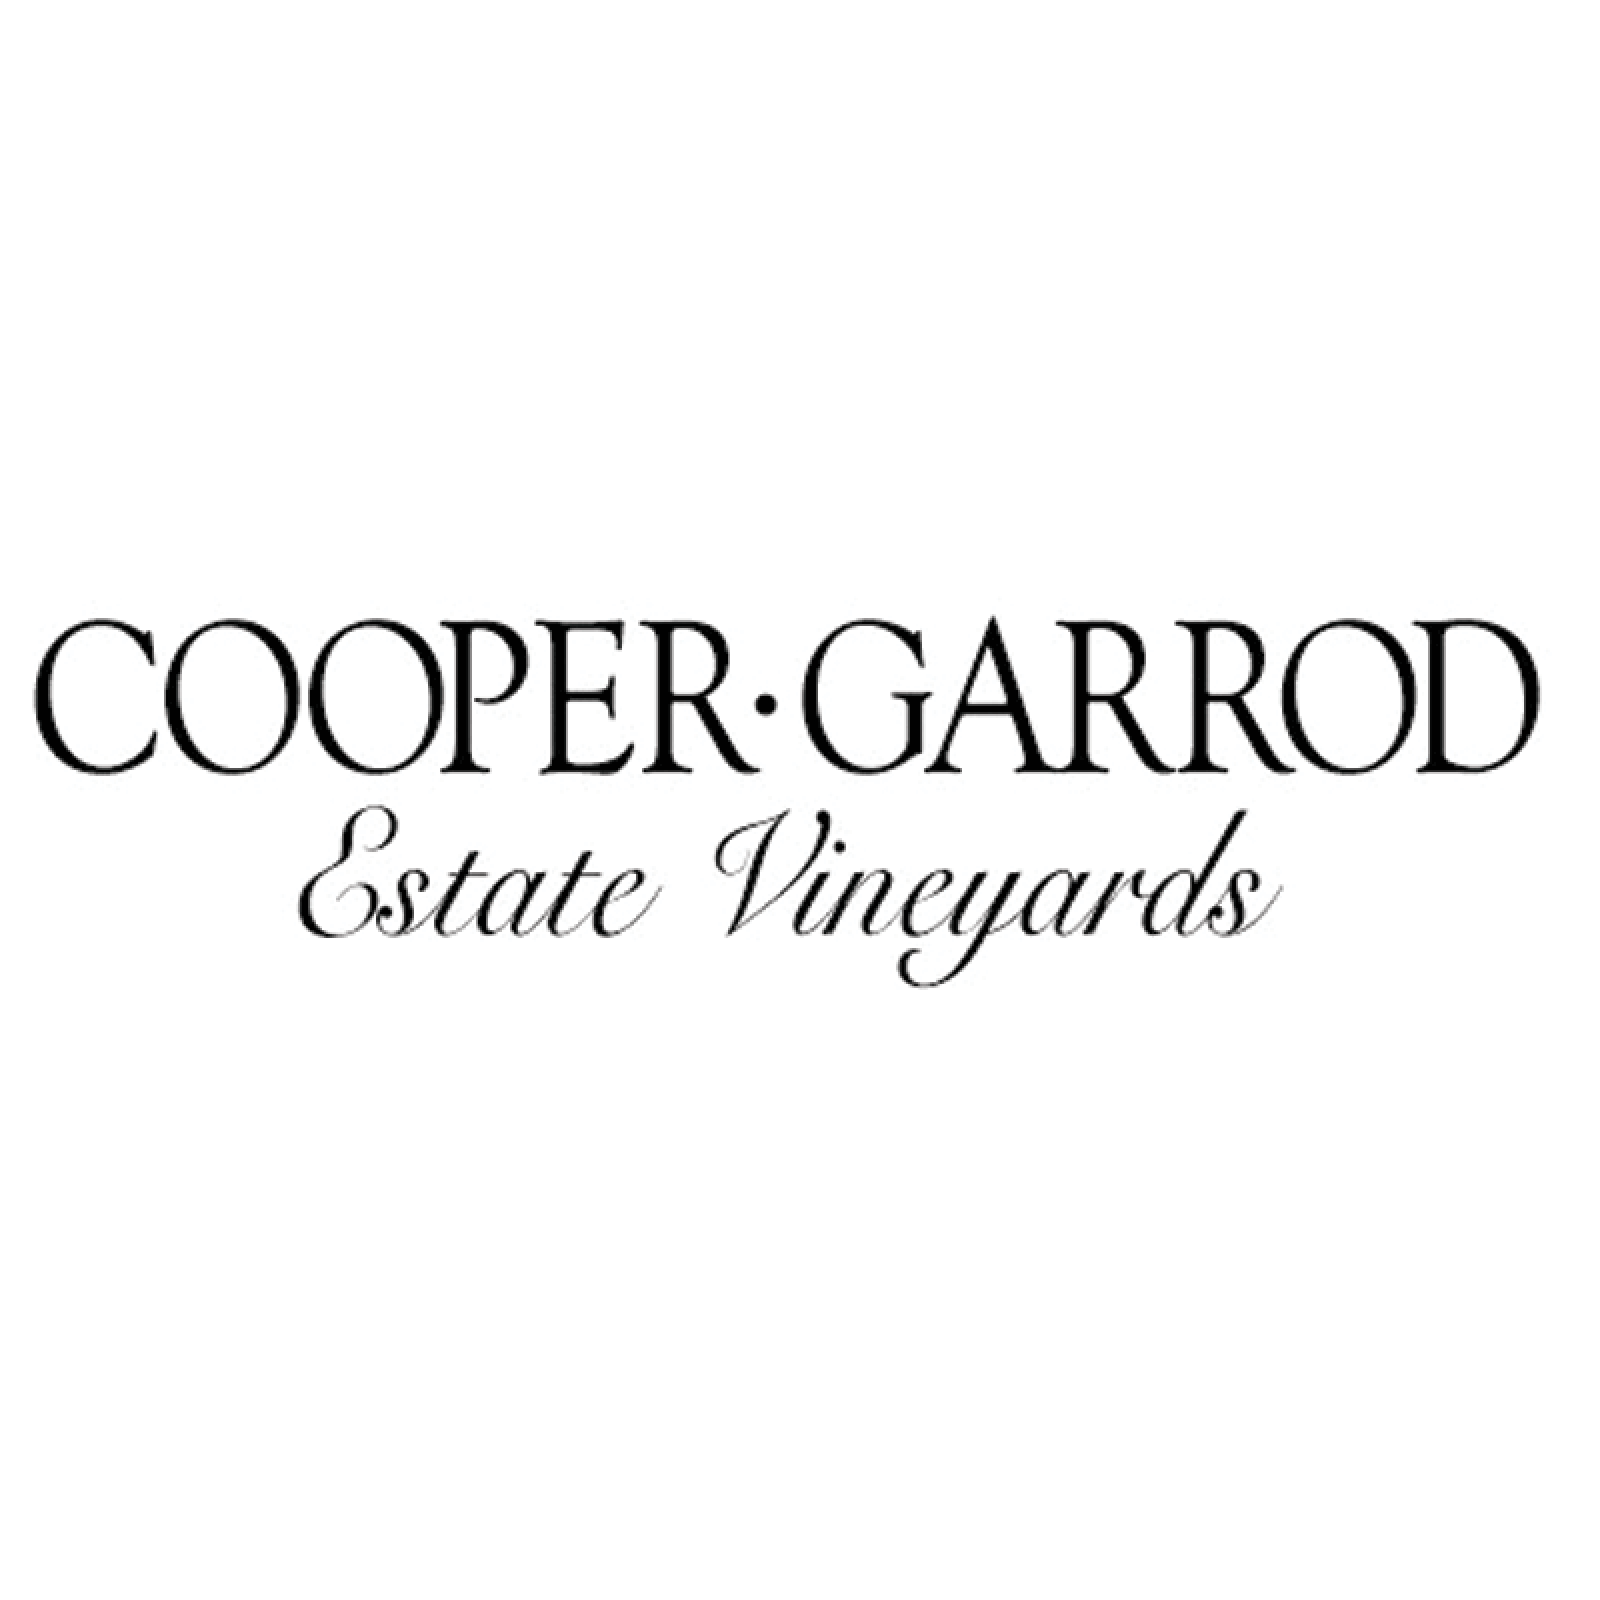 Cooper Garrod Merlot 2019 Wine Label 